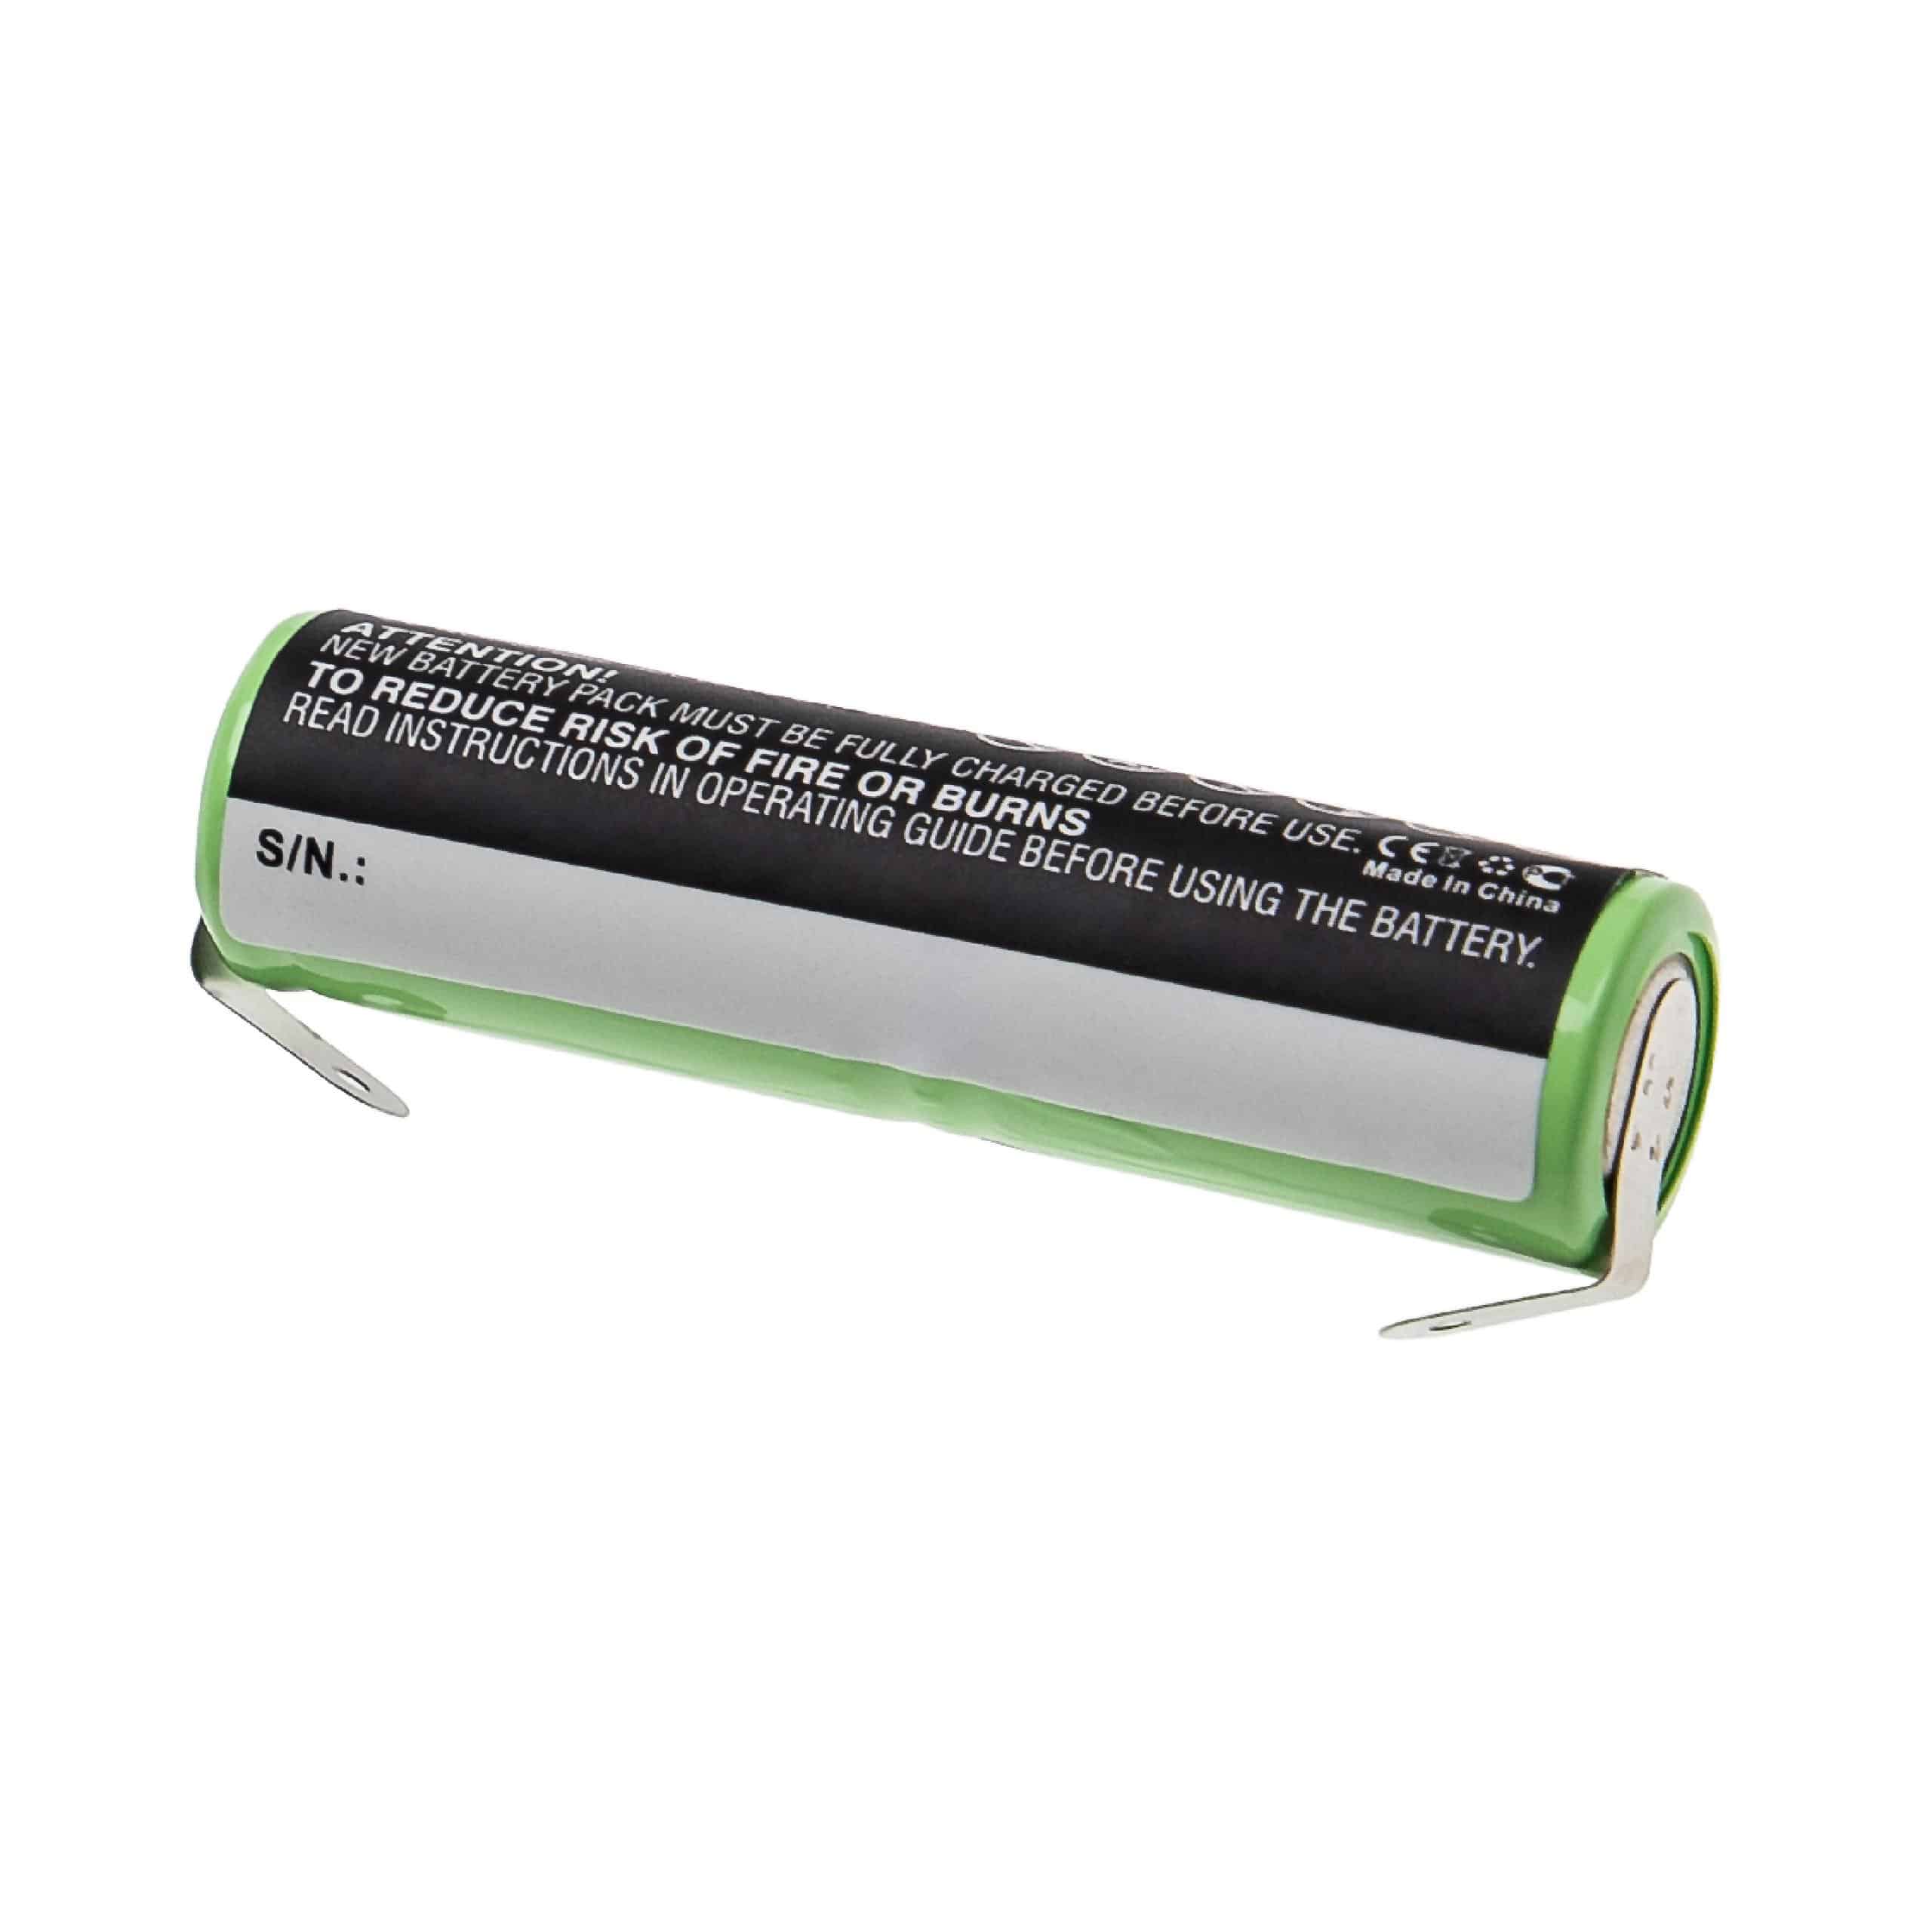 Batterie remplace Omron GP75AAH2A1H pour brosse à dents - 600mAh 2,4V NiMH